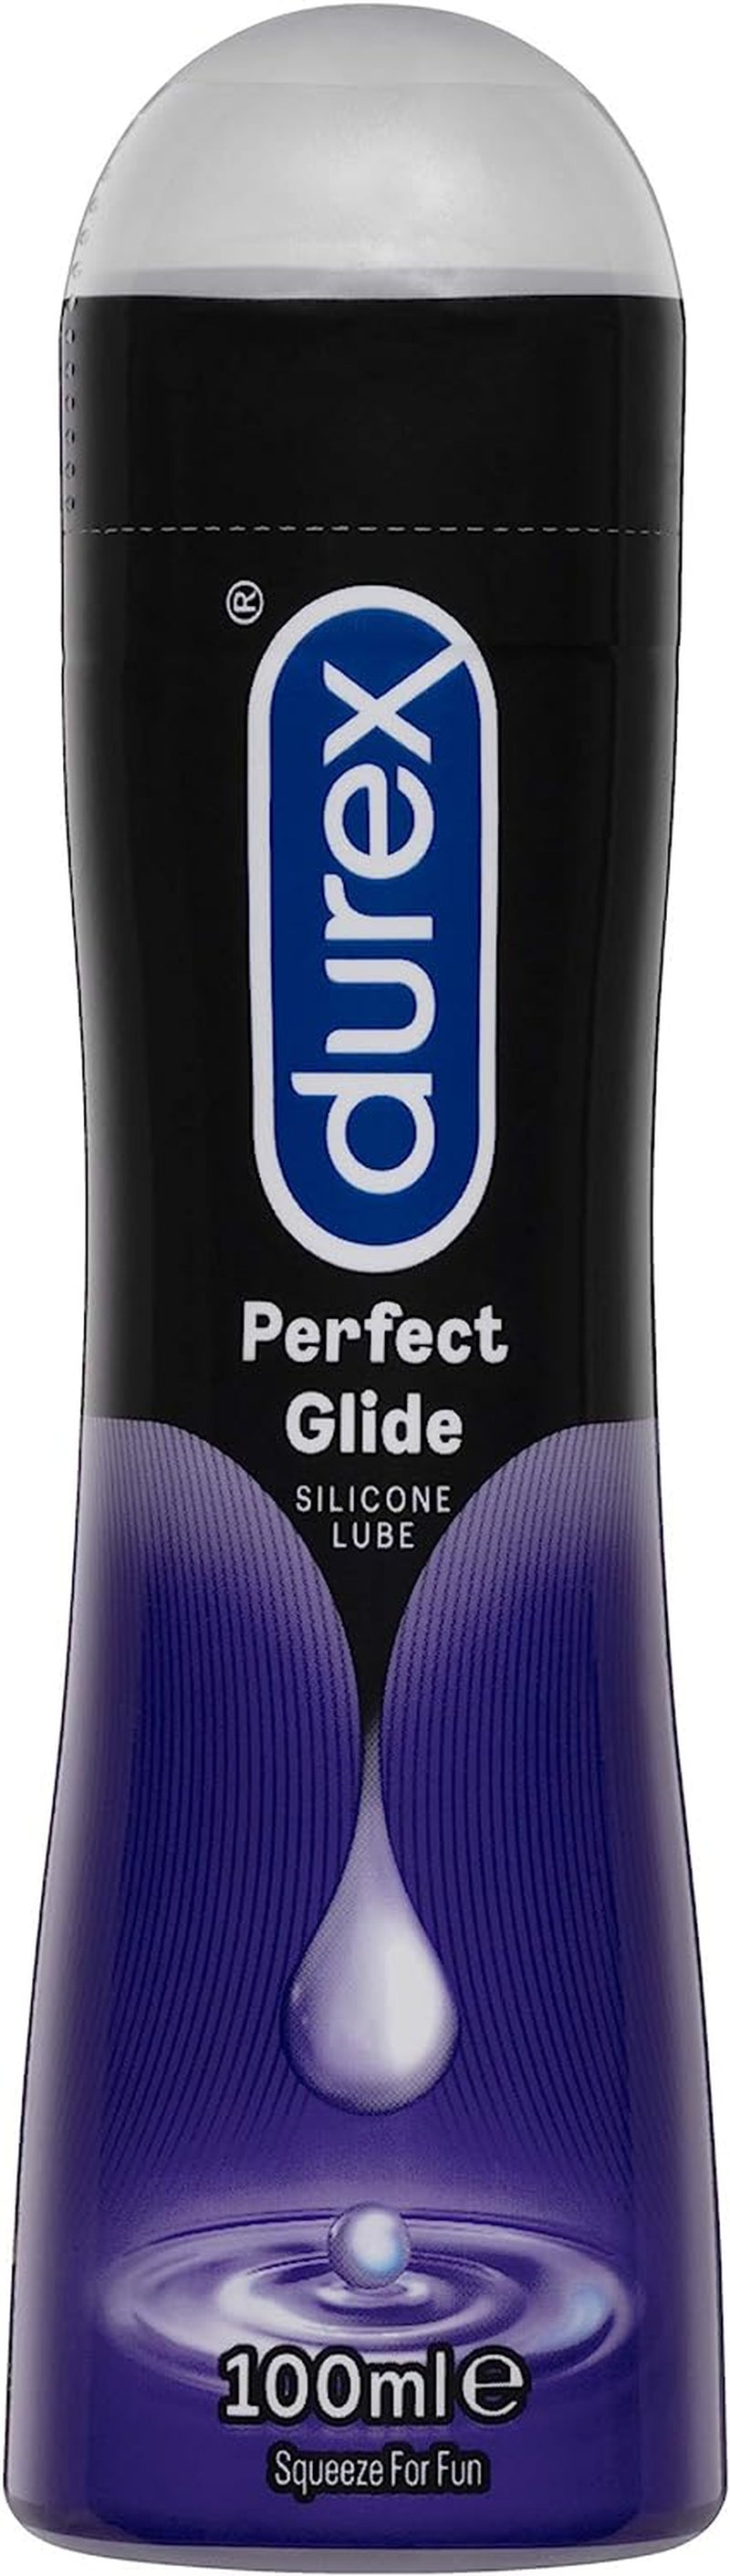 Perfect Glide Silicone Lubricant, 100Ml